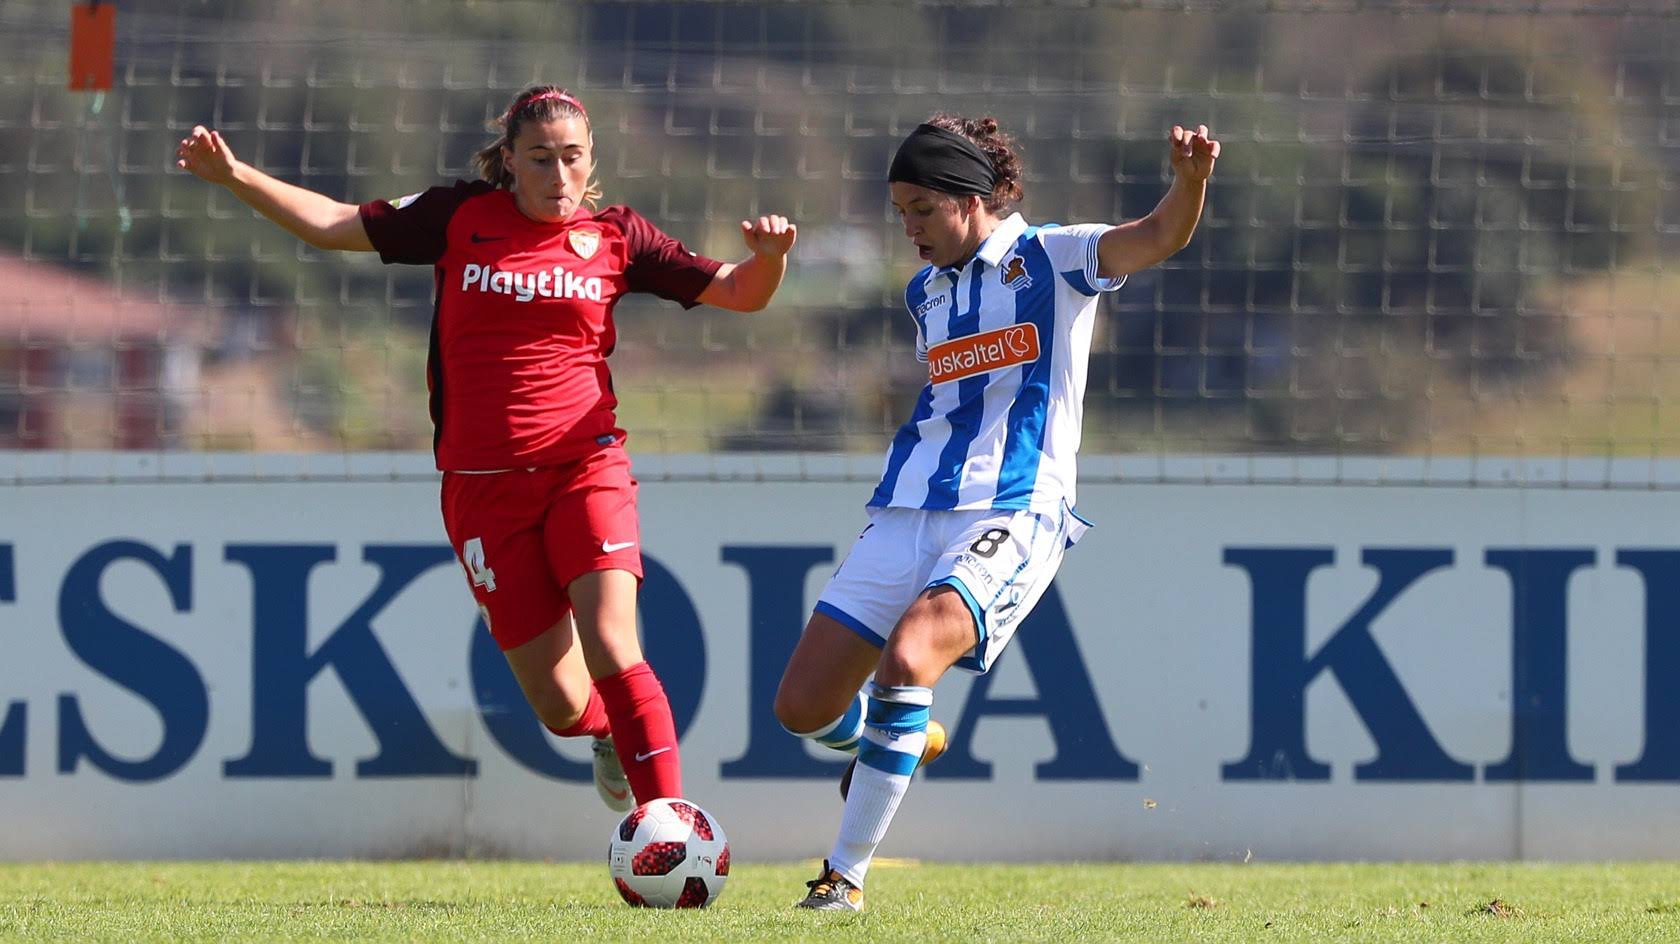 María Bores, del primer equipo femenino del Sevilla FC, pugna por el balón con Itxaso Uriarte durante el encuentro de liga disputado en Zubieta